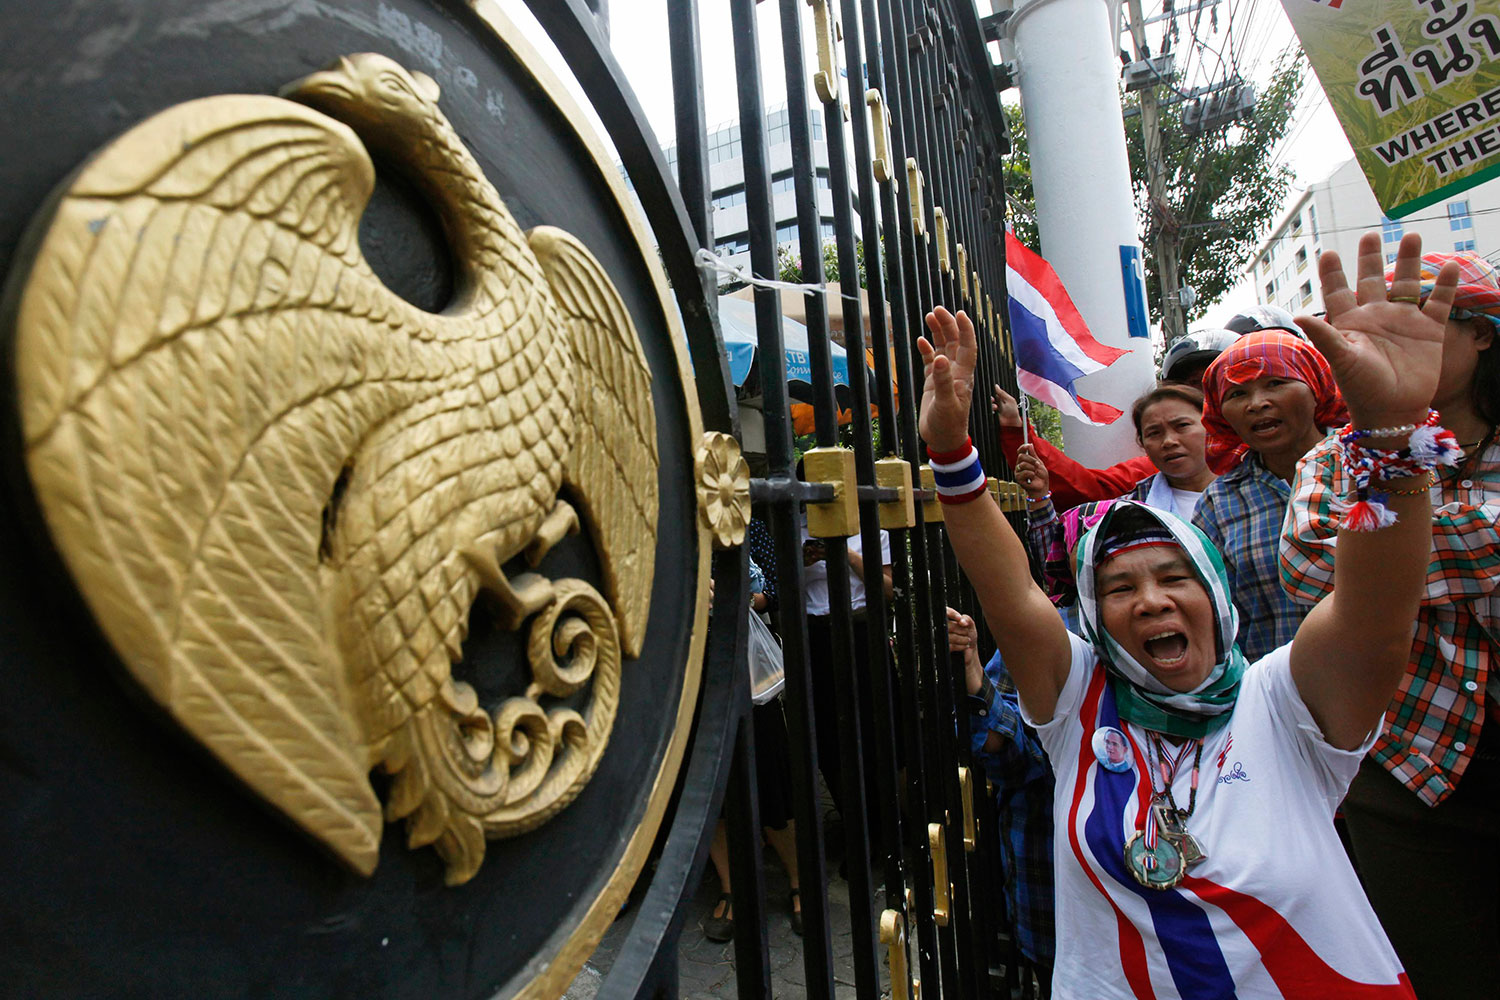 Tailandia levanta el estado de emergencia tras la pérdida de intensidad de las manifestaciones